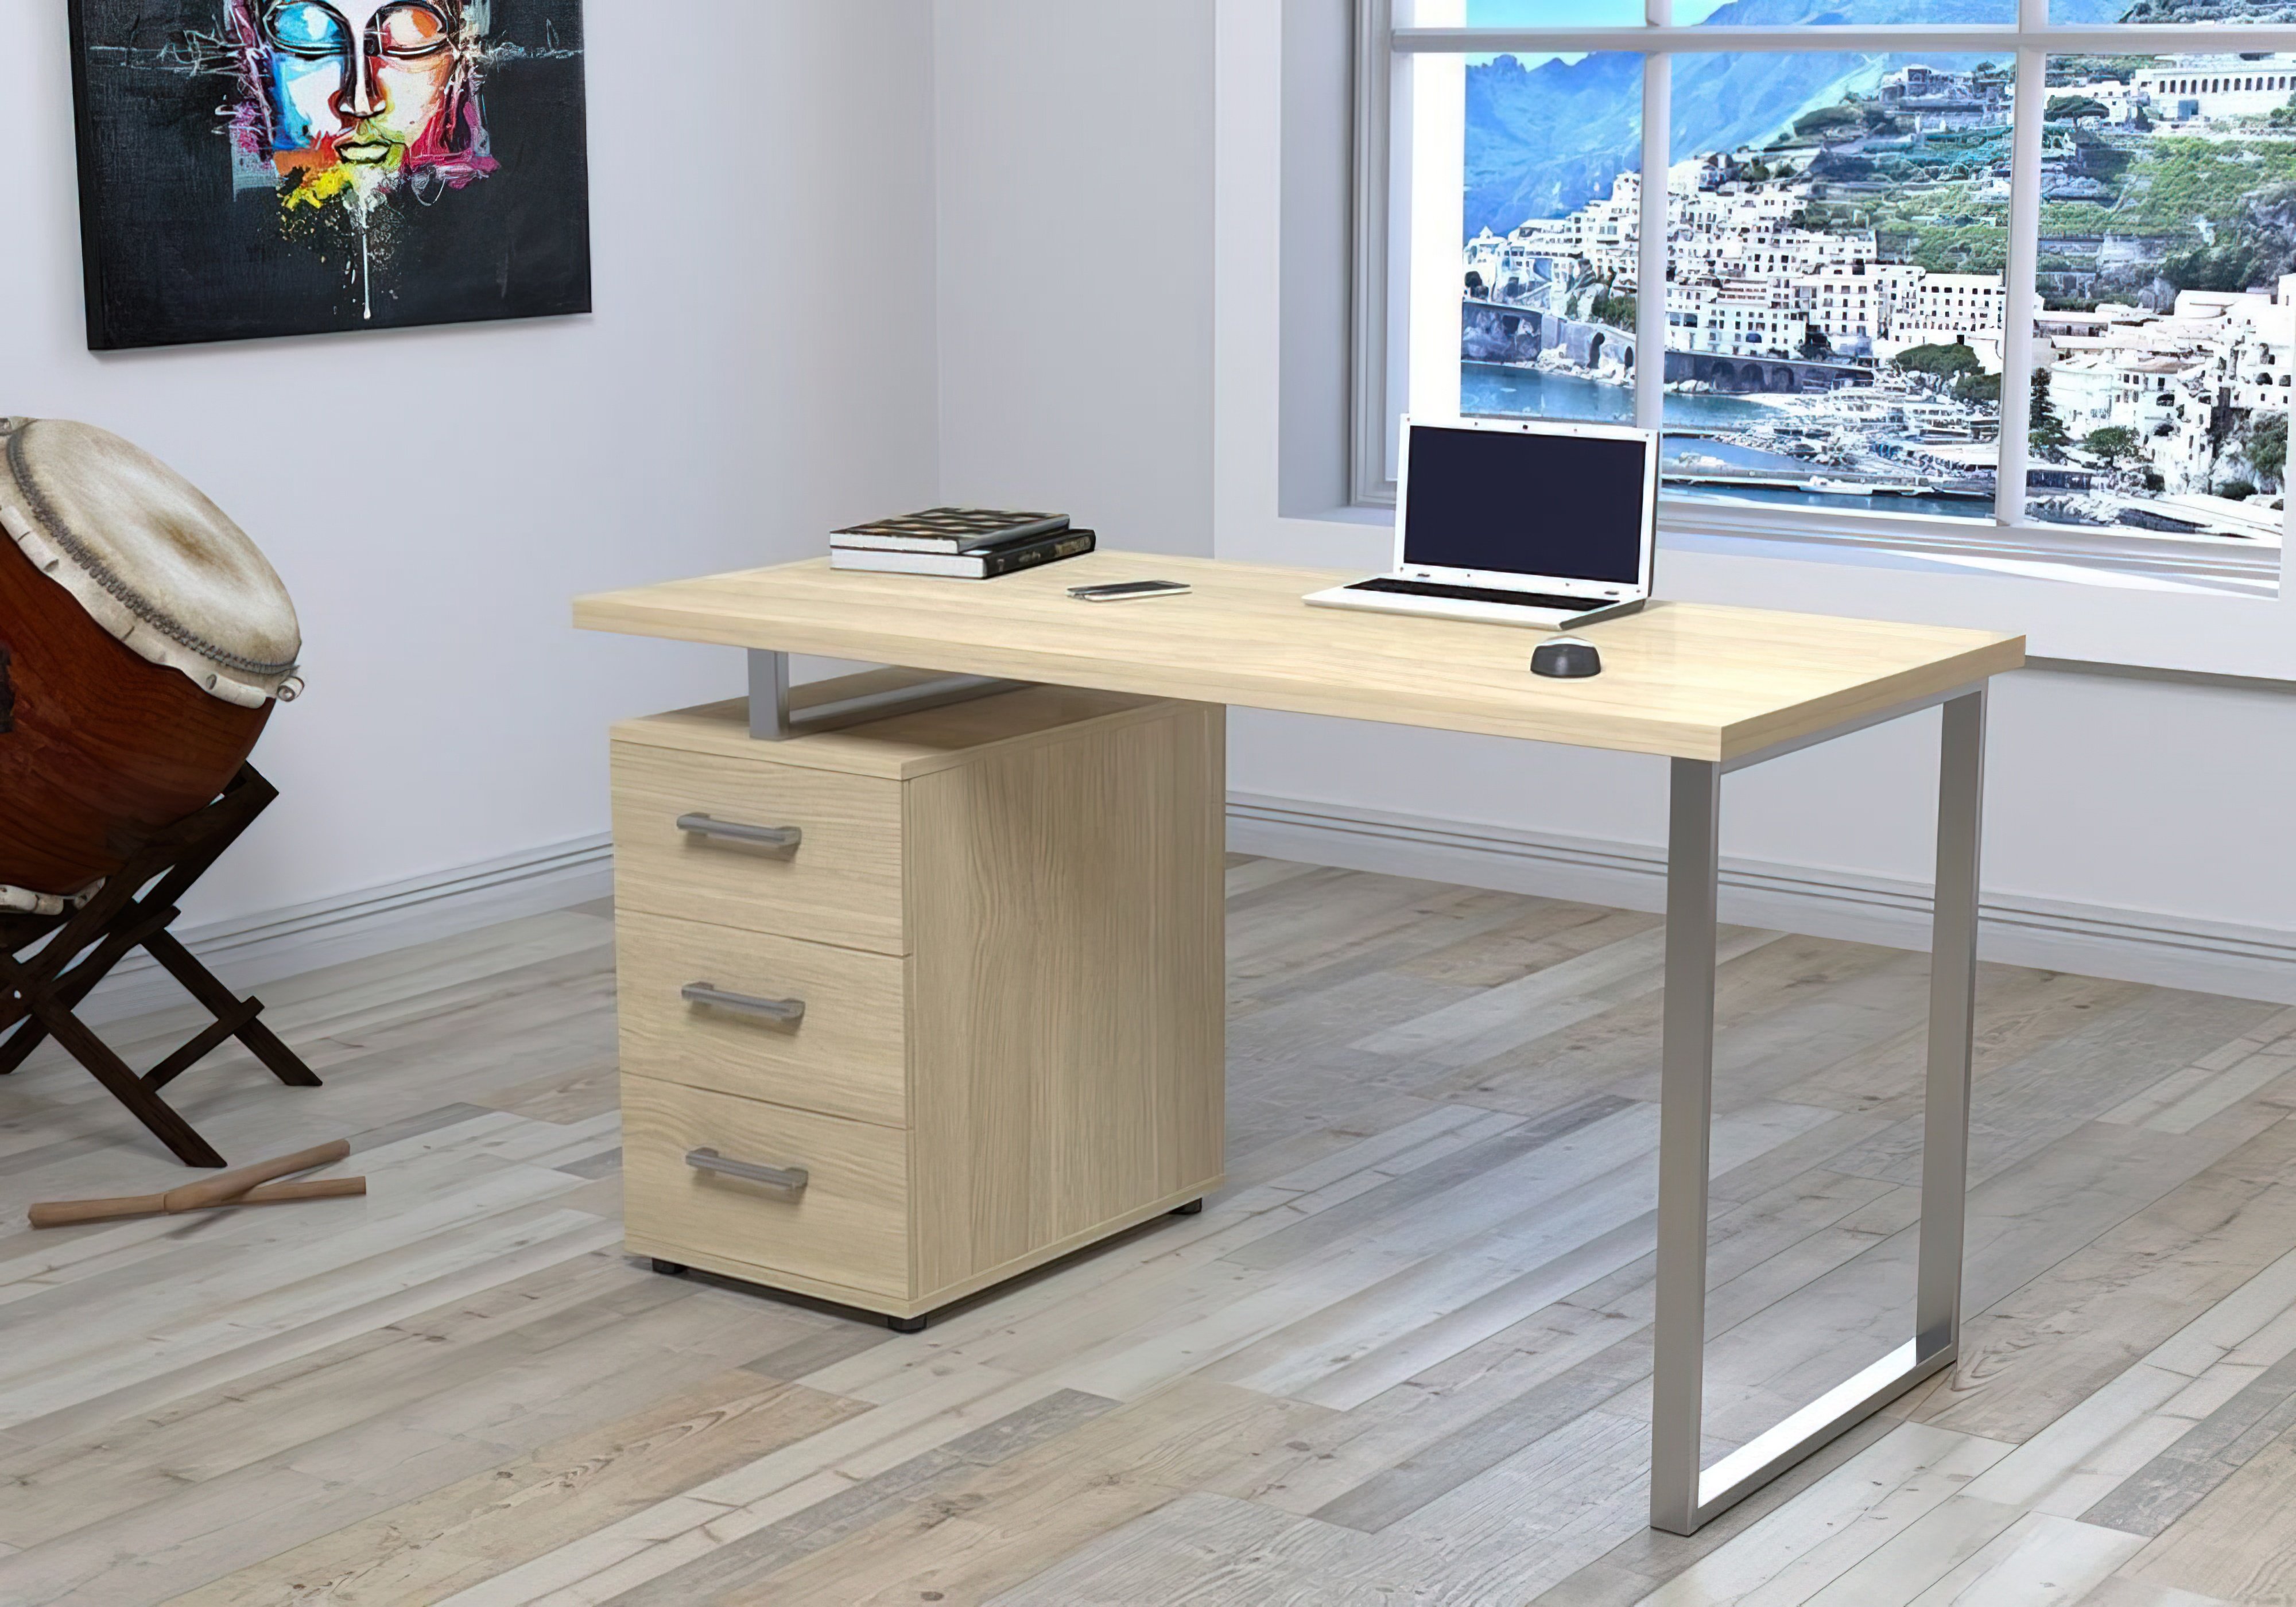  Купить Офисные столы Стол офисный "Макс L-27" Loft Design